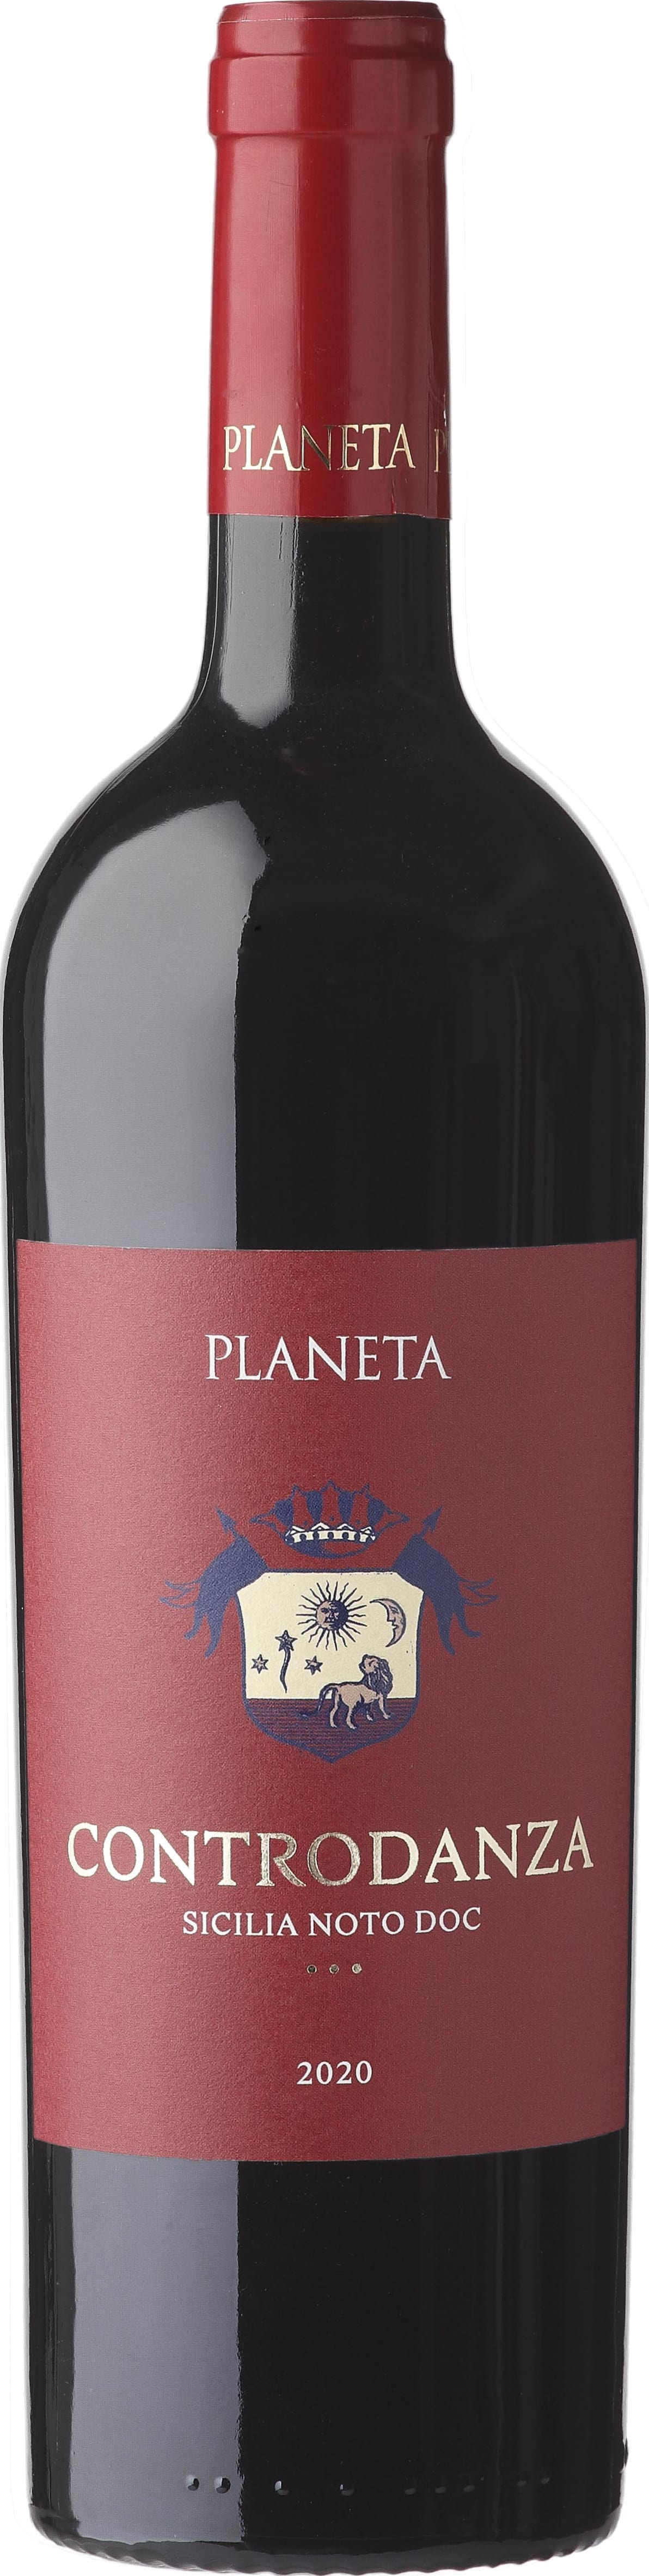 Planeta - Buonivini, Noto Controdanza DOC Noto 2020 75cl - Buy Planeta - Buonivini, Noto Wines from GREAT WINES DIRECT wine shop